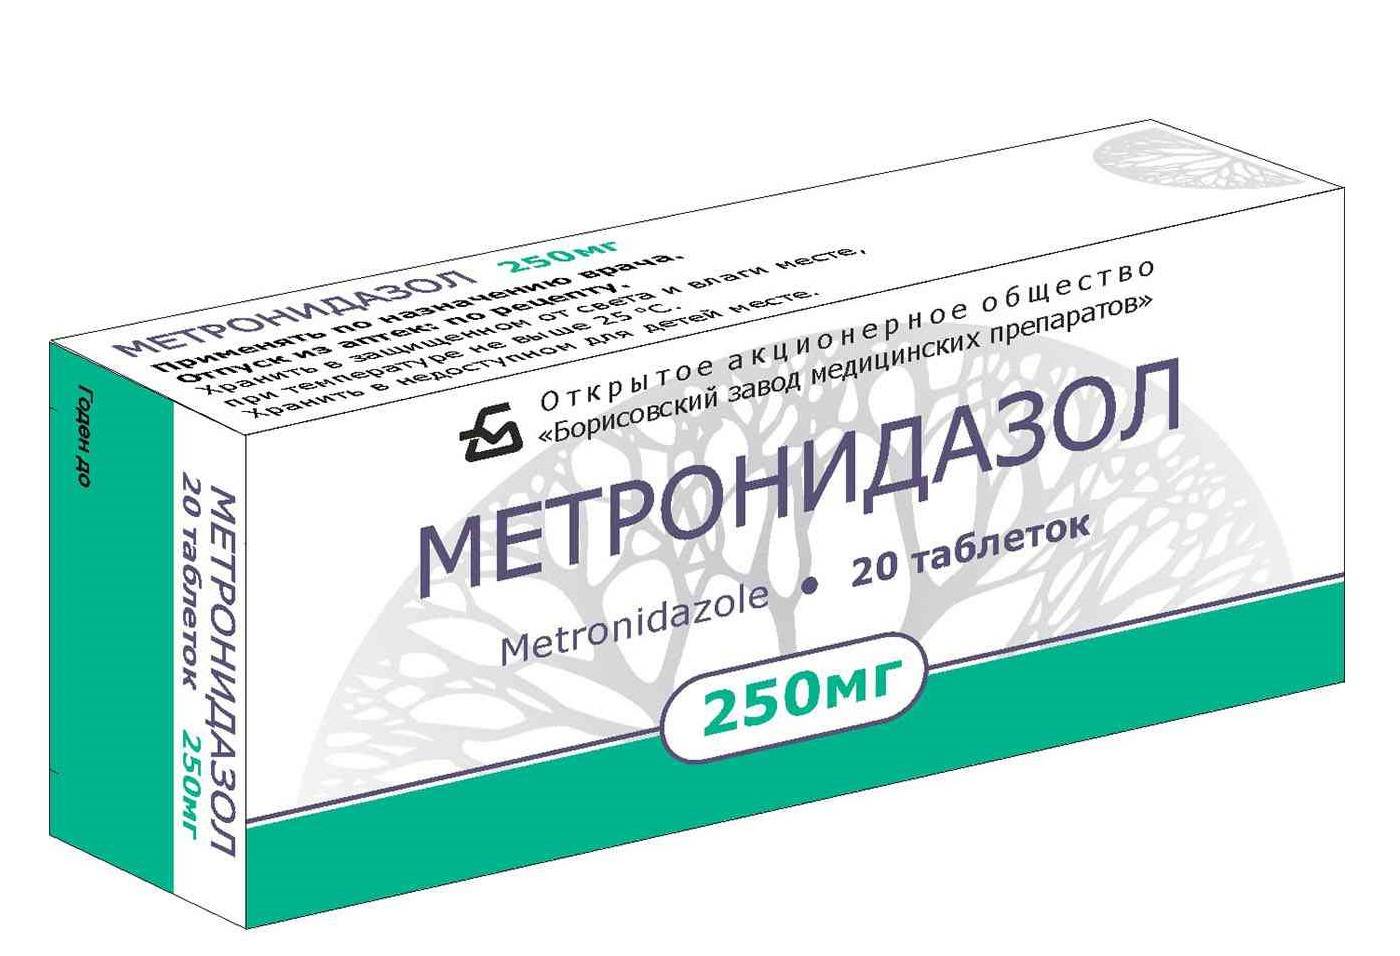 Метронидазол-убф (metronidazole-ubf)